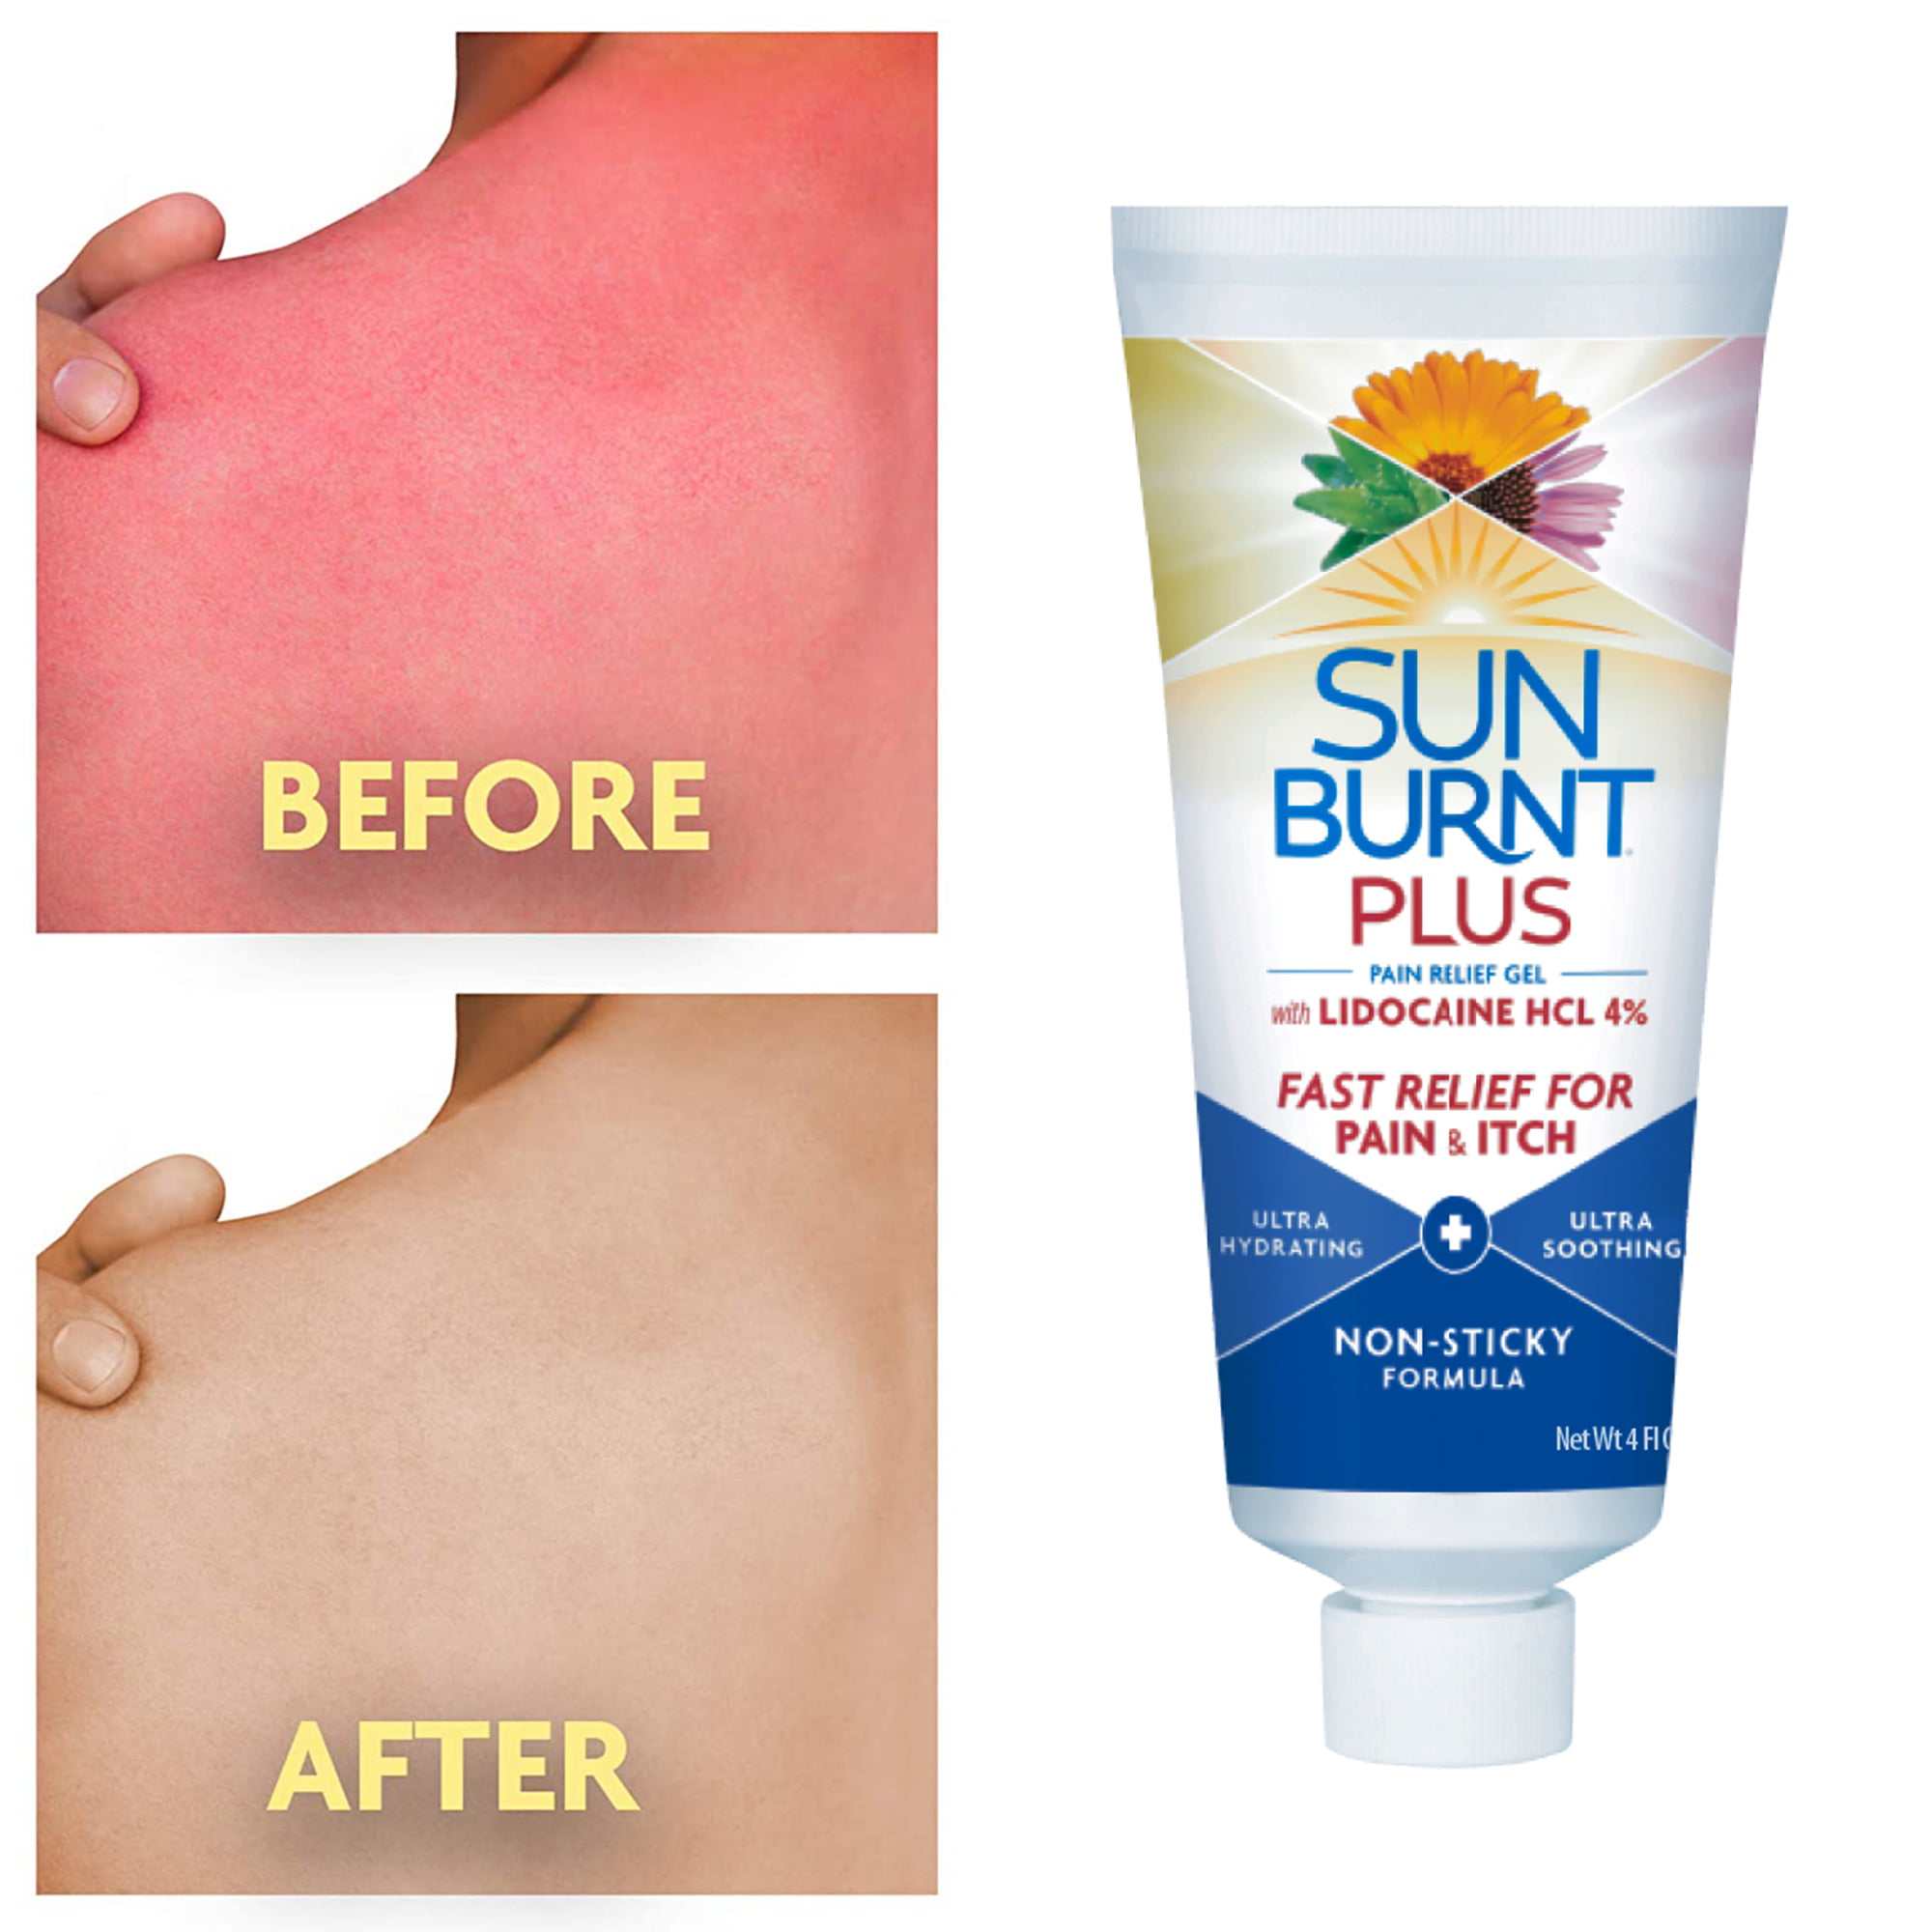 Making Sunburn Relief Paste (DIY Saturday Episode 22 ) 